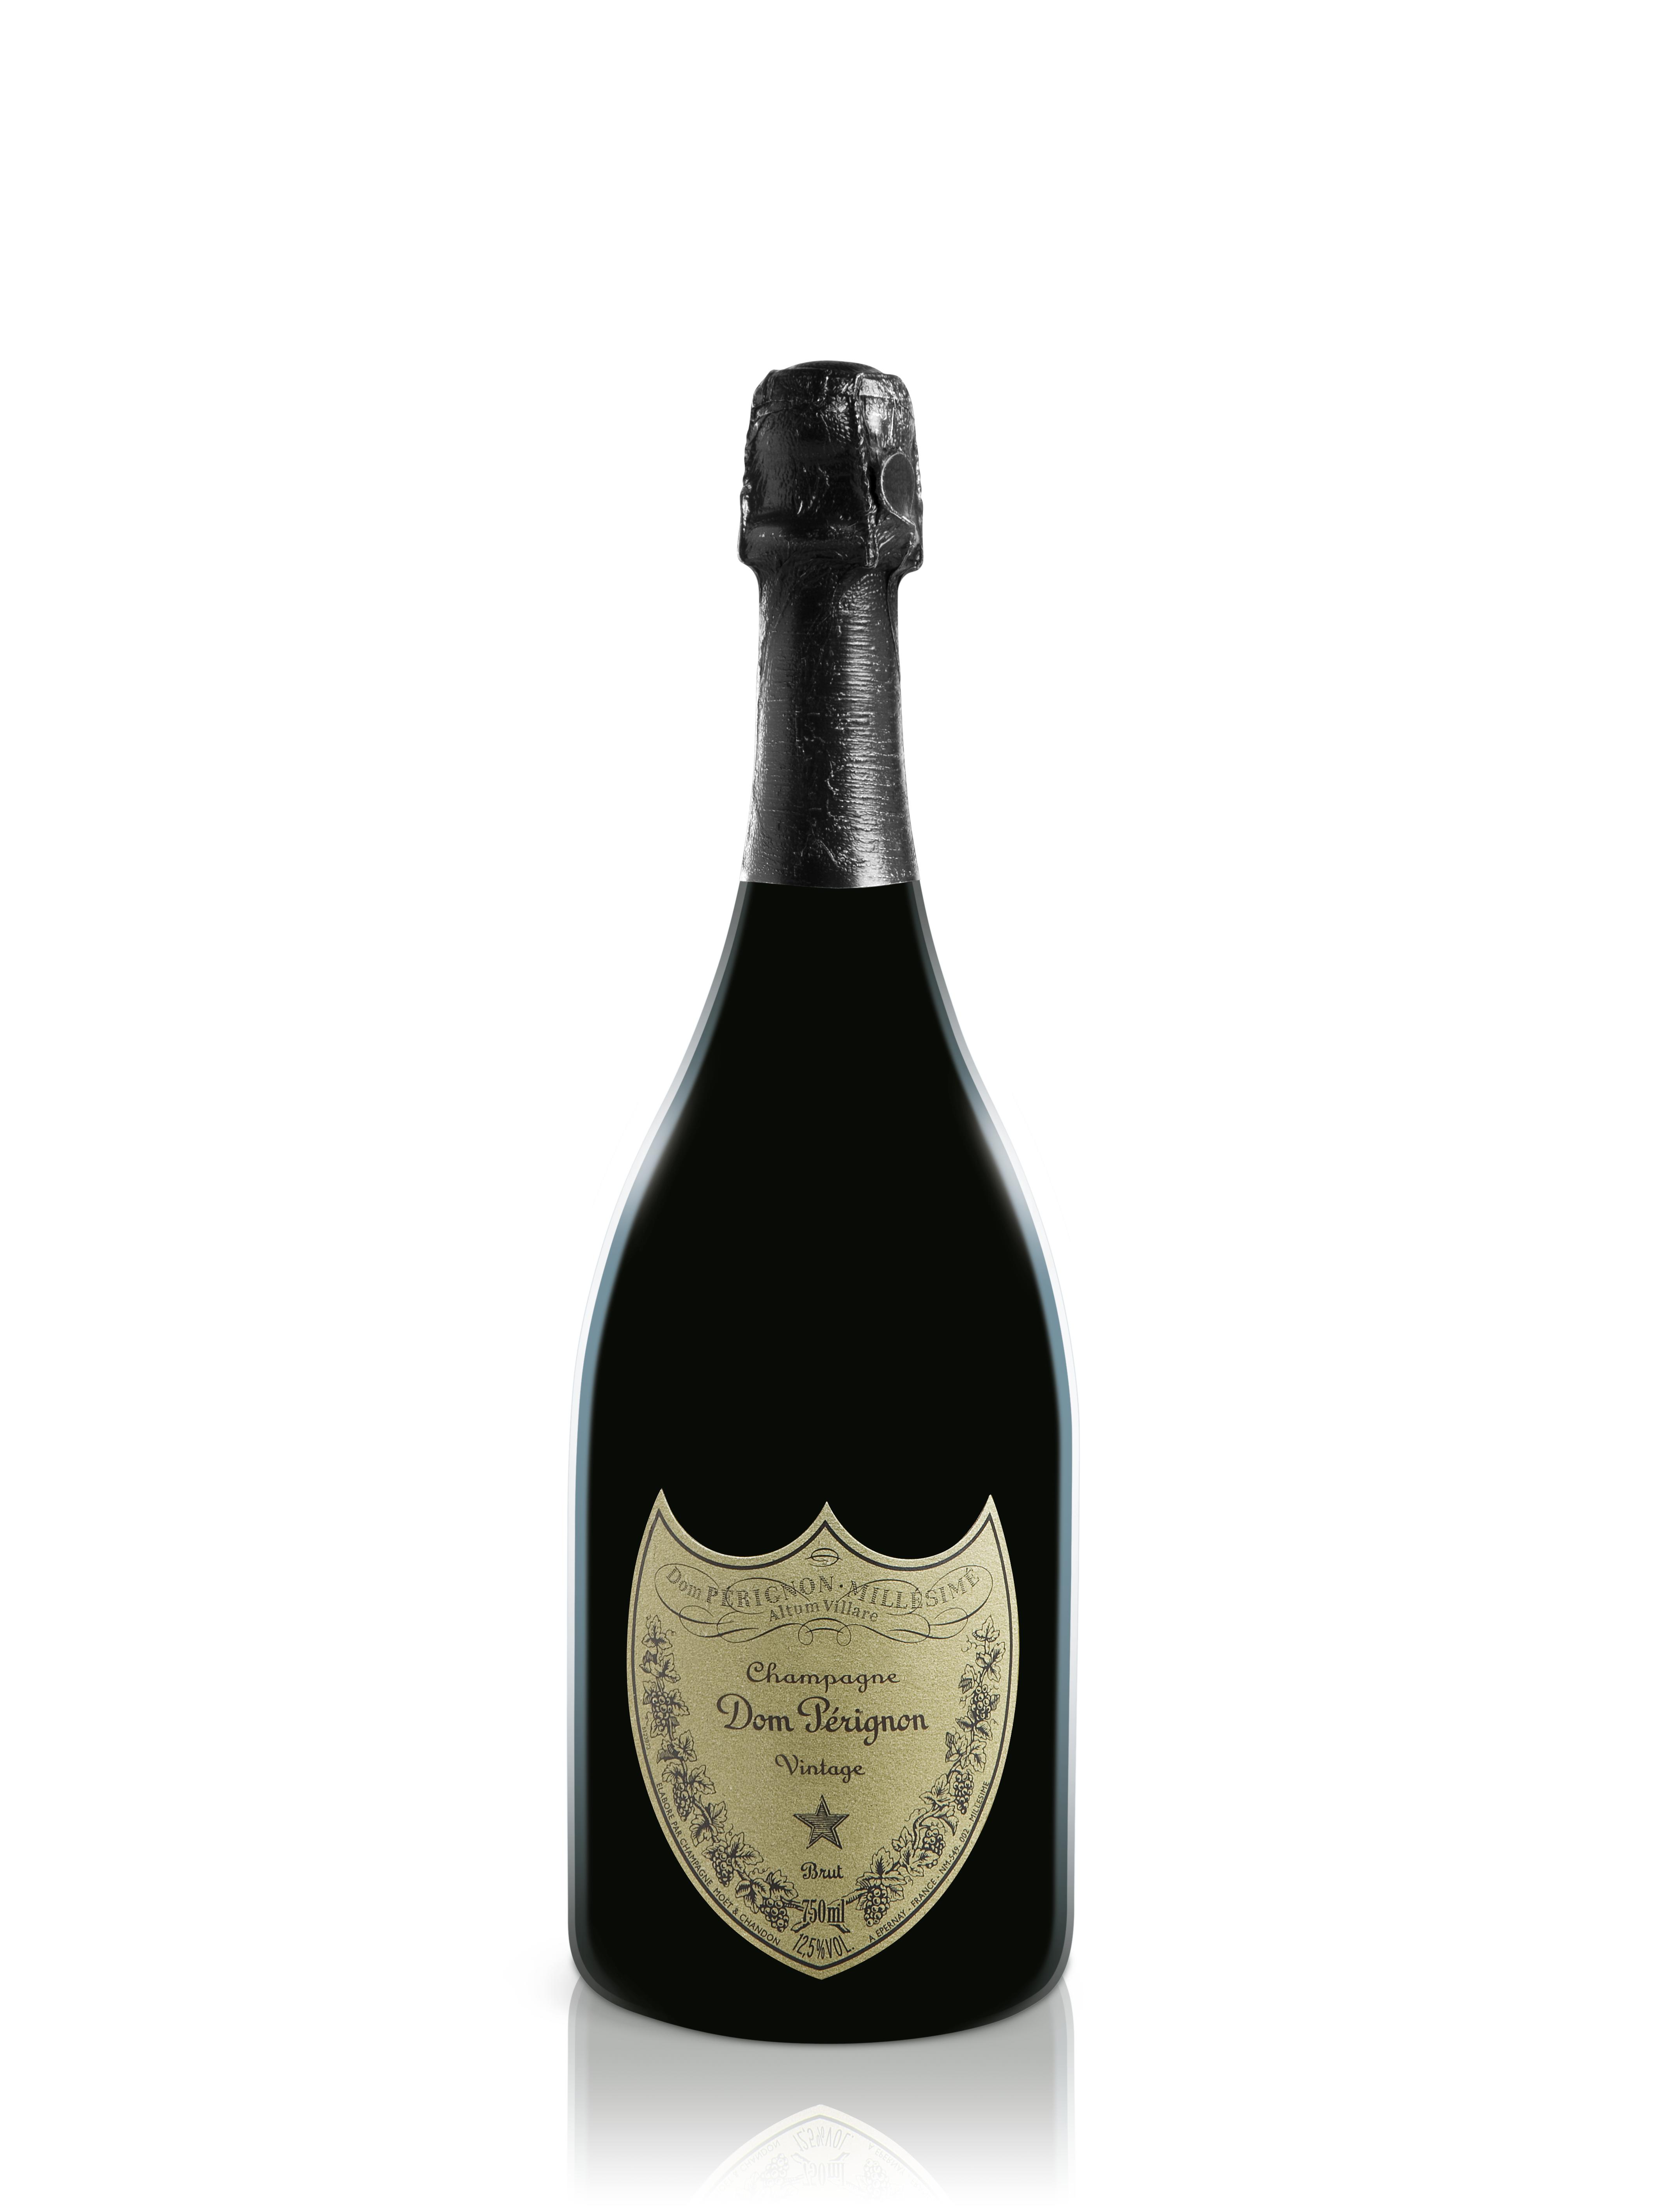 Champagne Dom Perignon 2006